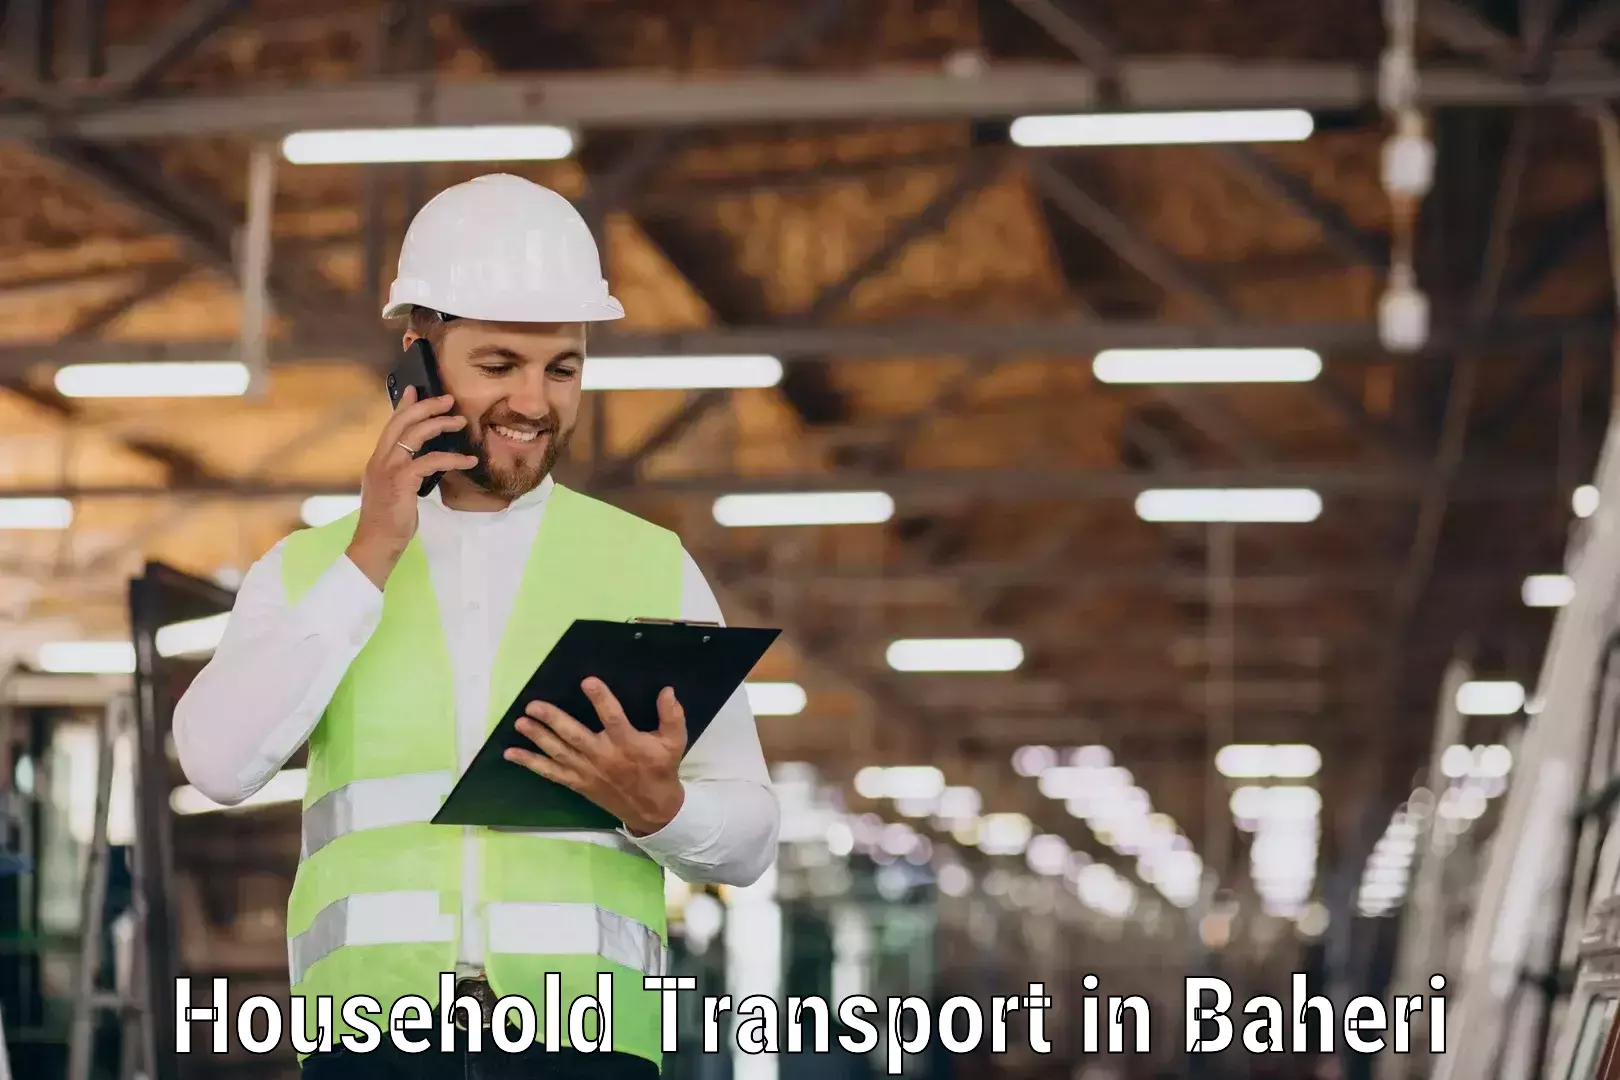 Expert household transport in Baheri